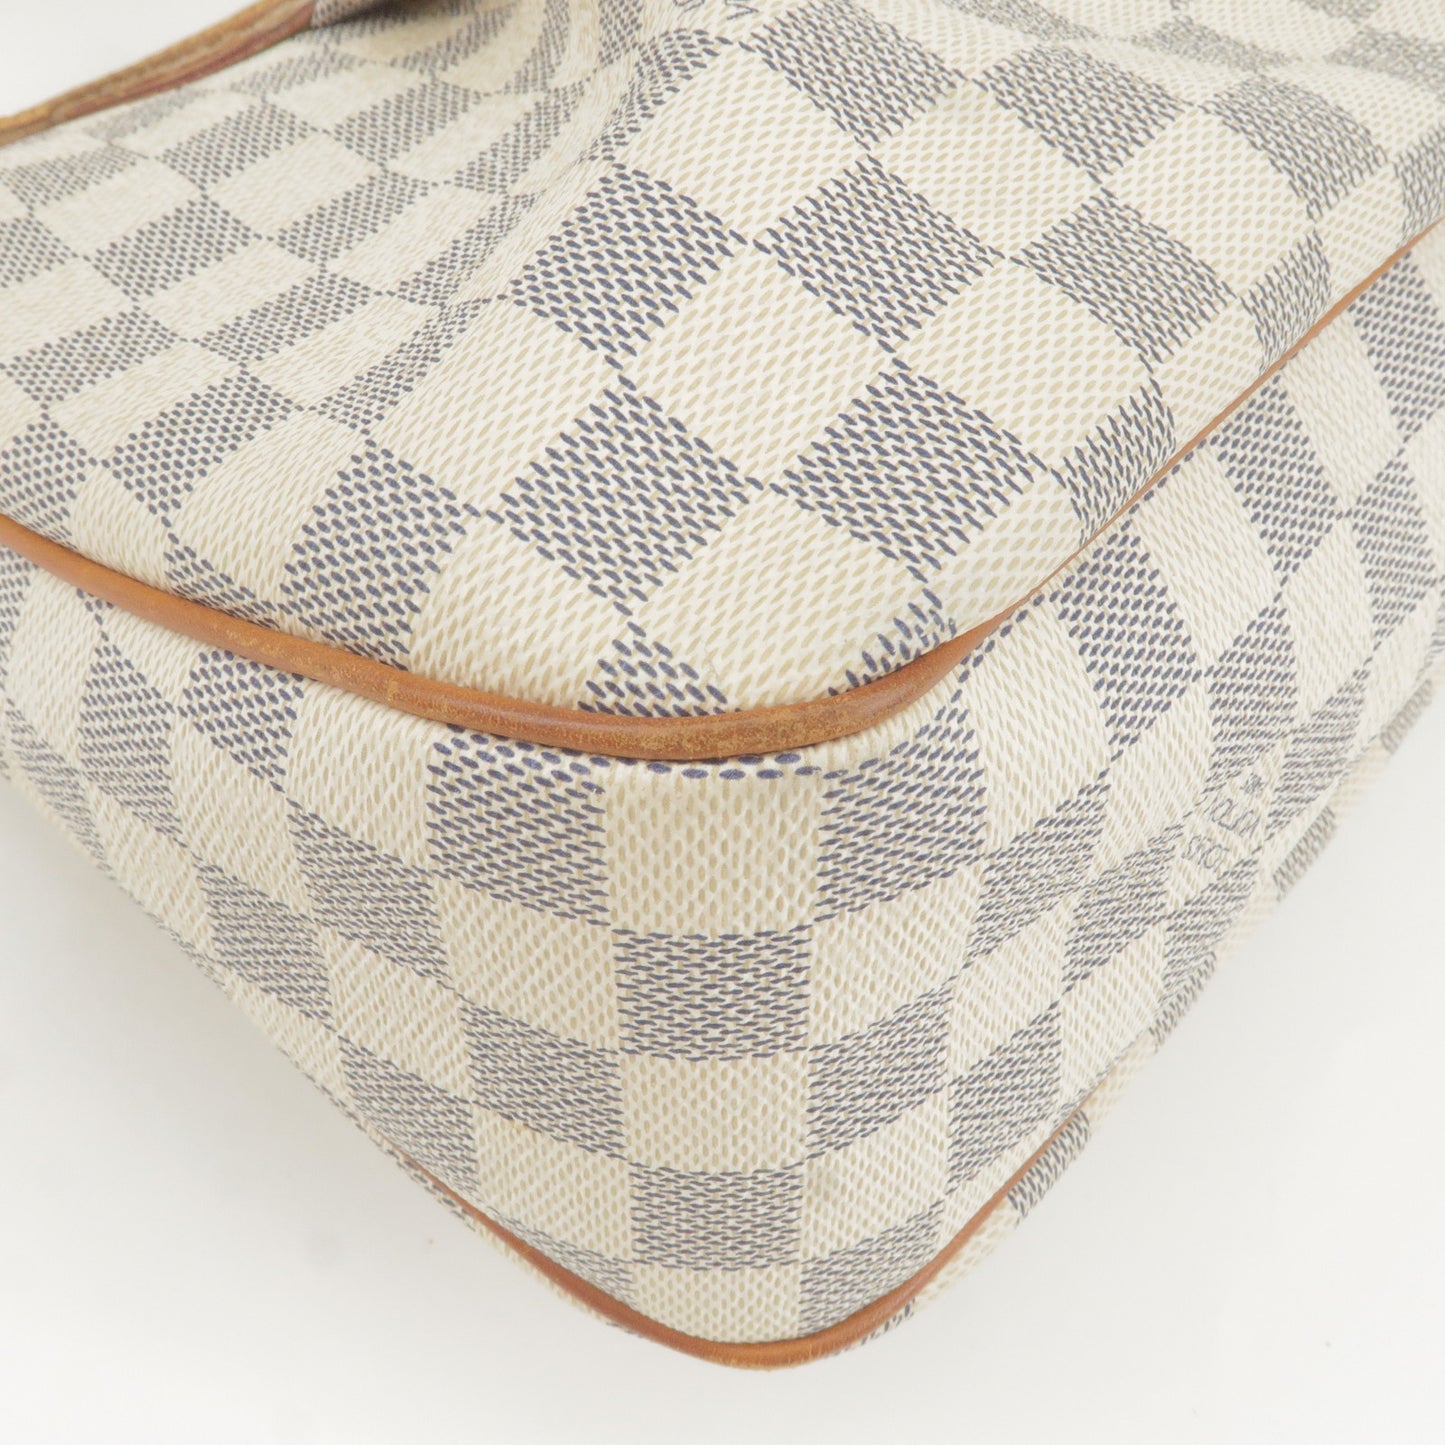 Louis Vuitton Damier Azur Siracusa PM Shoulder Bag N41113